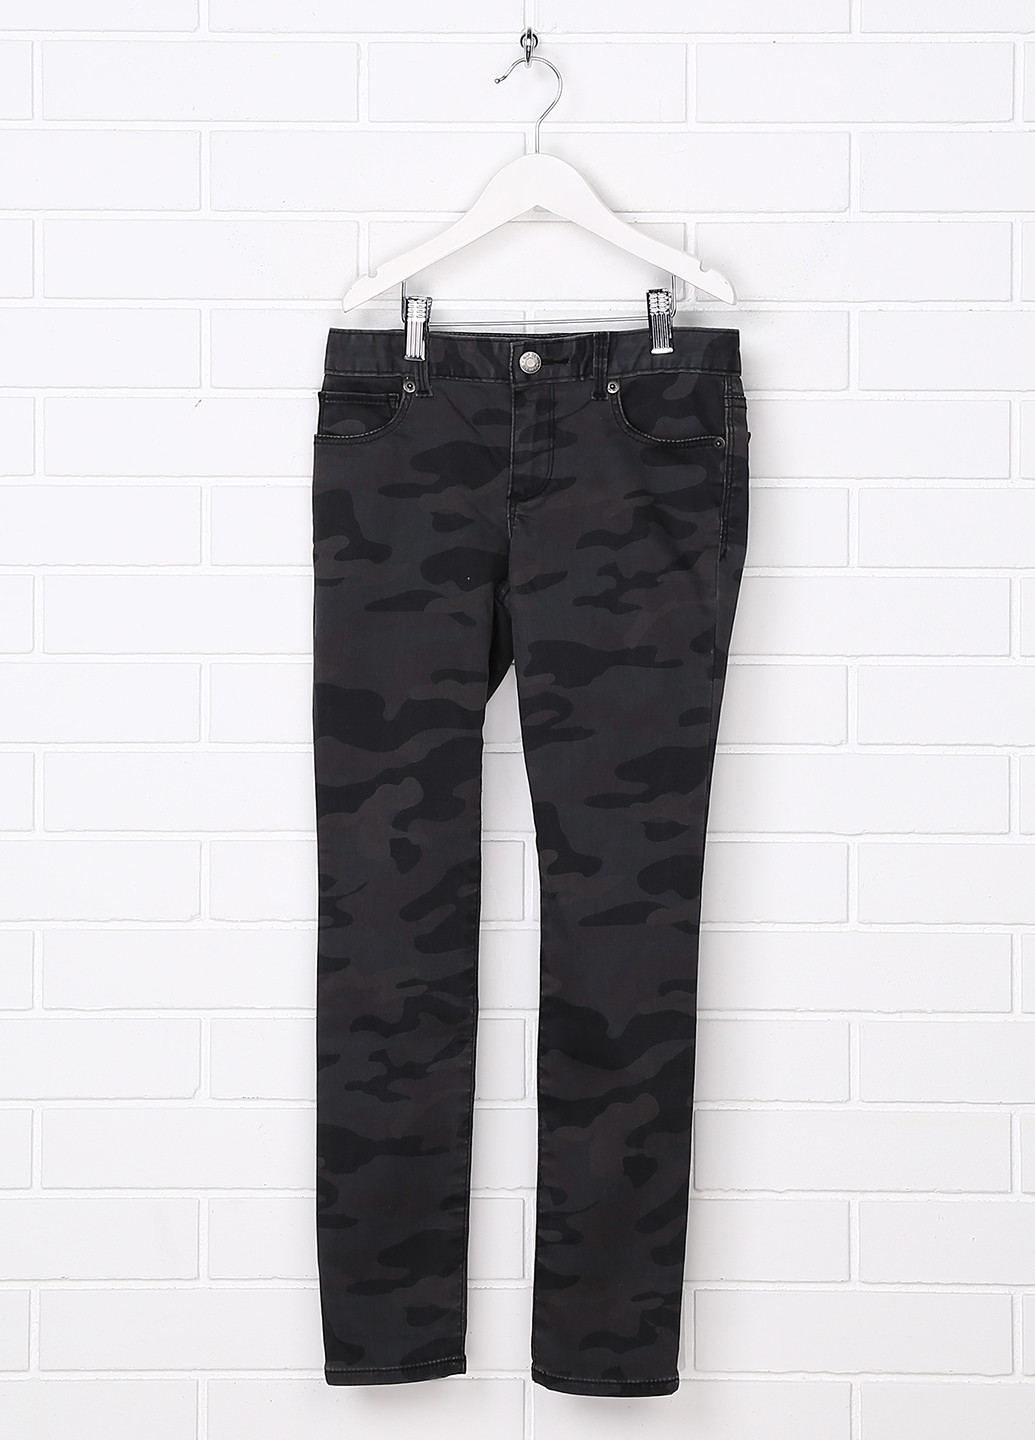 Темно-серые джинсовые демисезонные зауженные брюки Gap